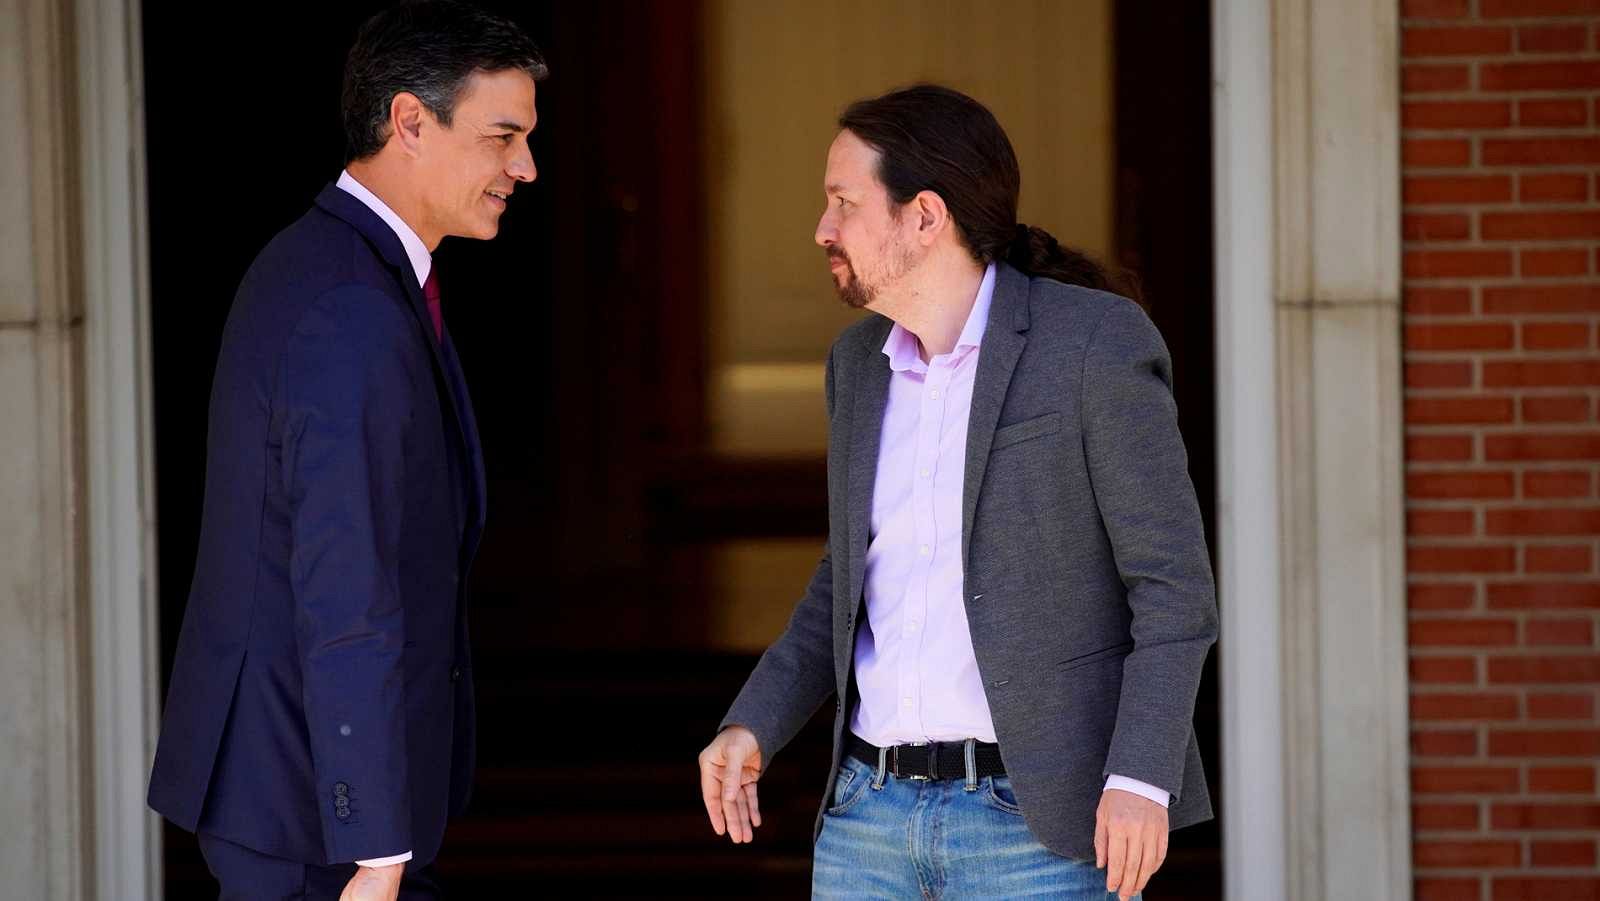 Elecciones generales: Pedro Sánchez y Pablo Iglesias harán una comunicación oficial este mediodía en el Congreso - RTVE.es